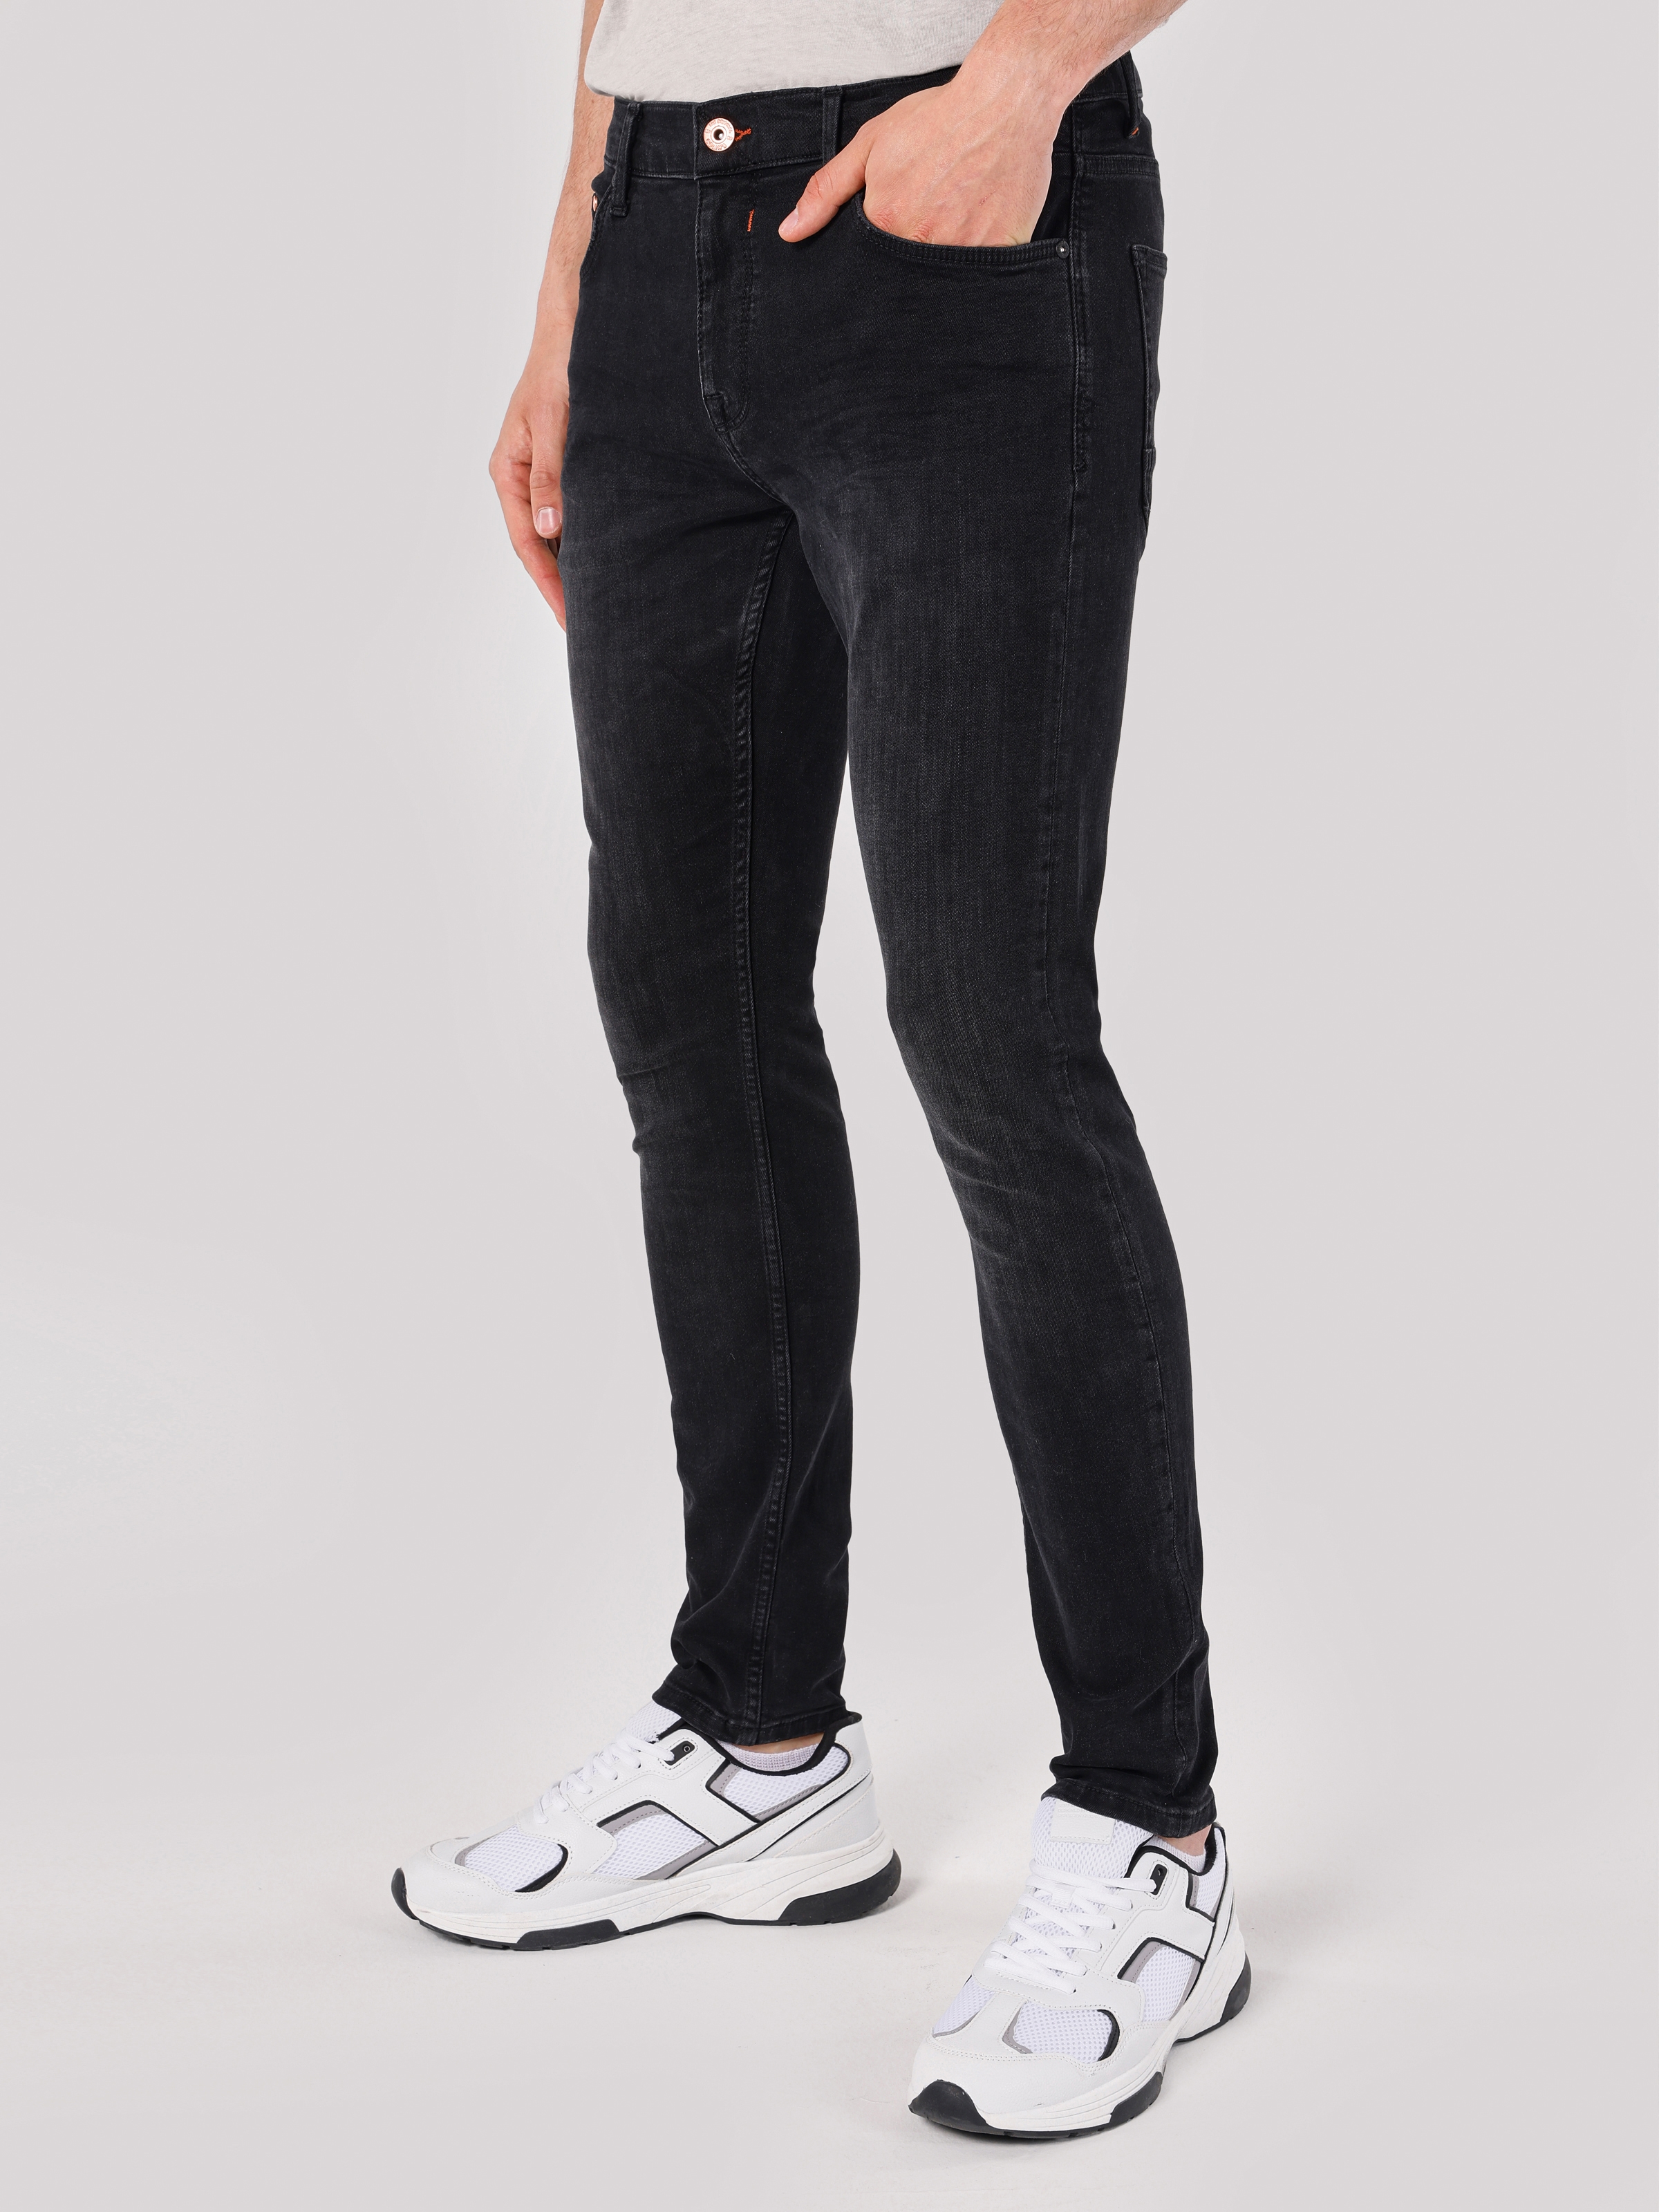 Afficher les détails de 040 Alex Super Slim Fit Taille Basse Jambe Étroite Pantalon En Jean Noir Pour Hommes